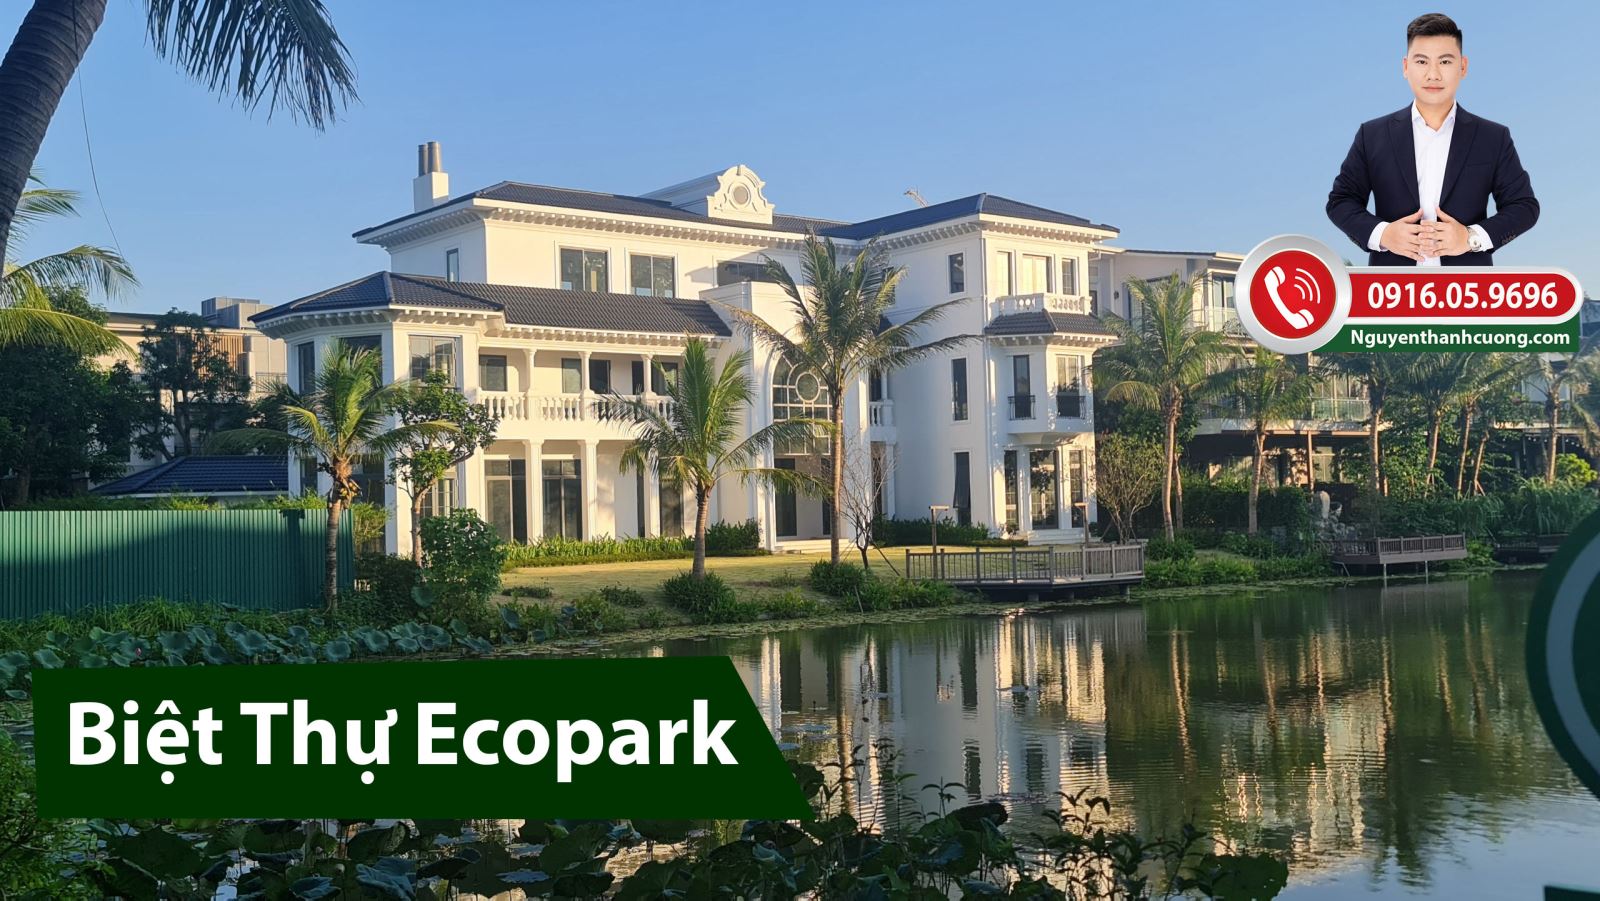 Biệt thự đảo Ecopark Hưng Yên